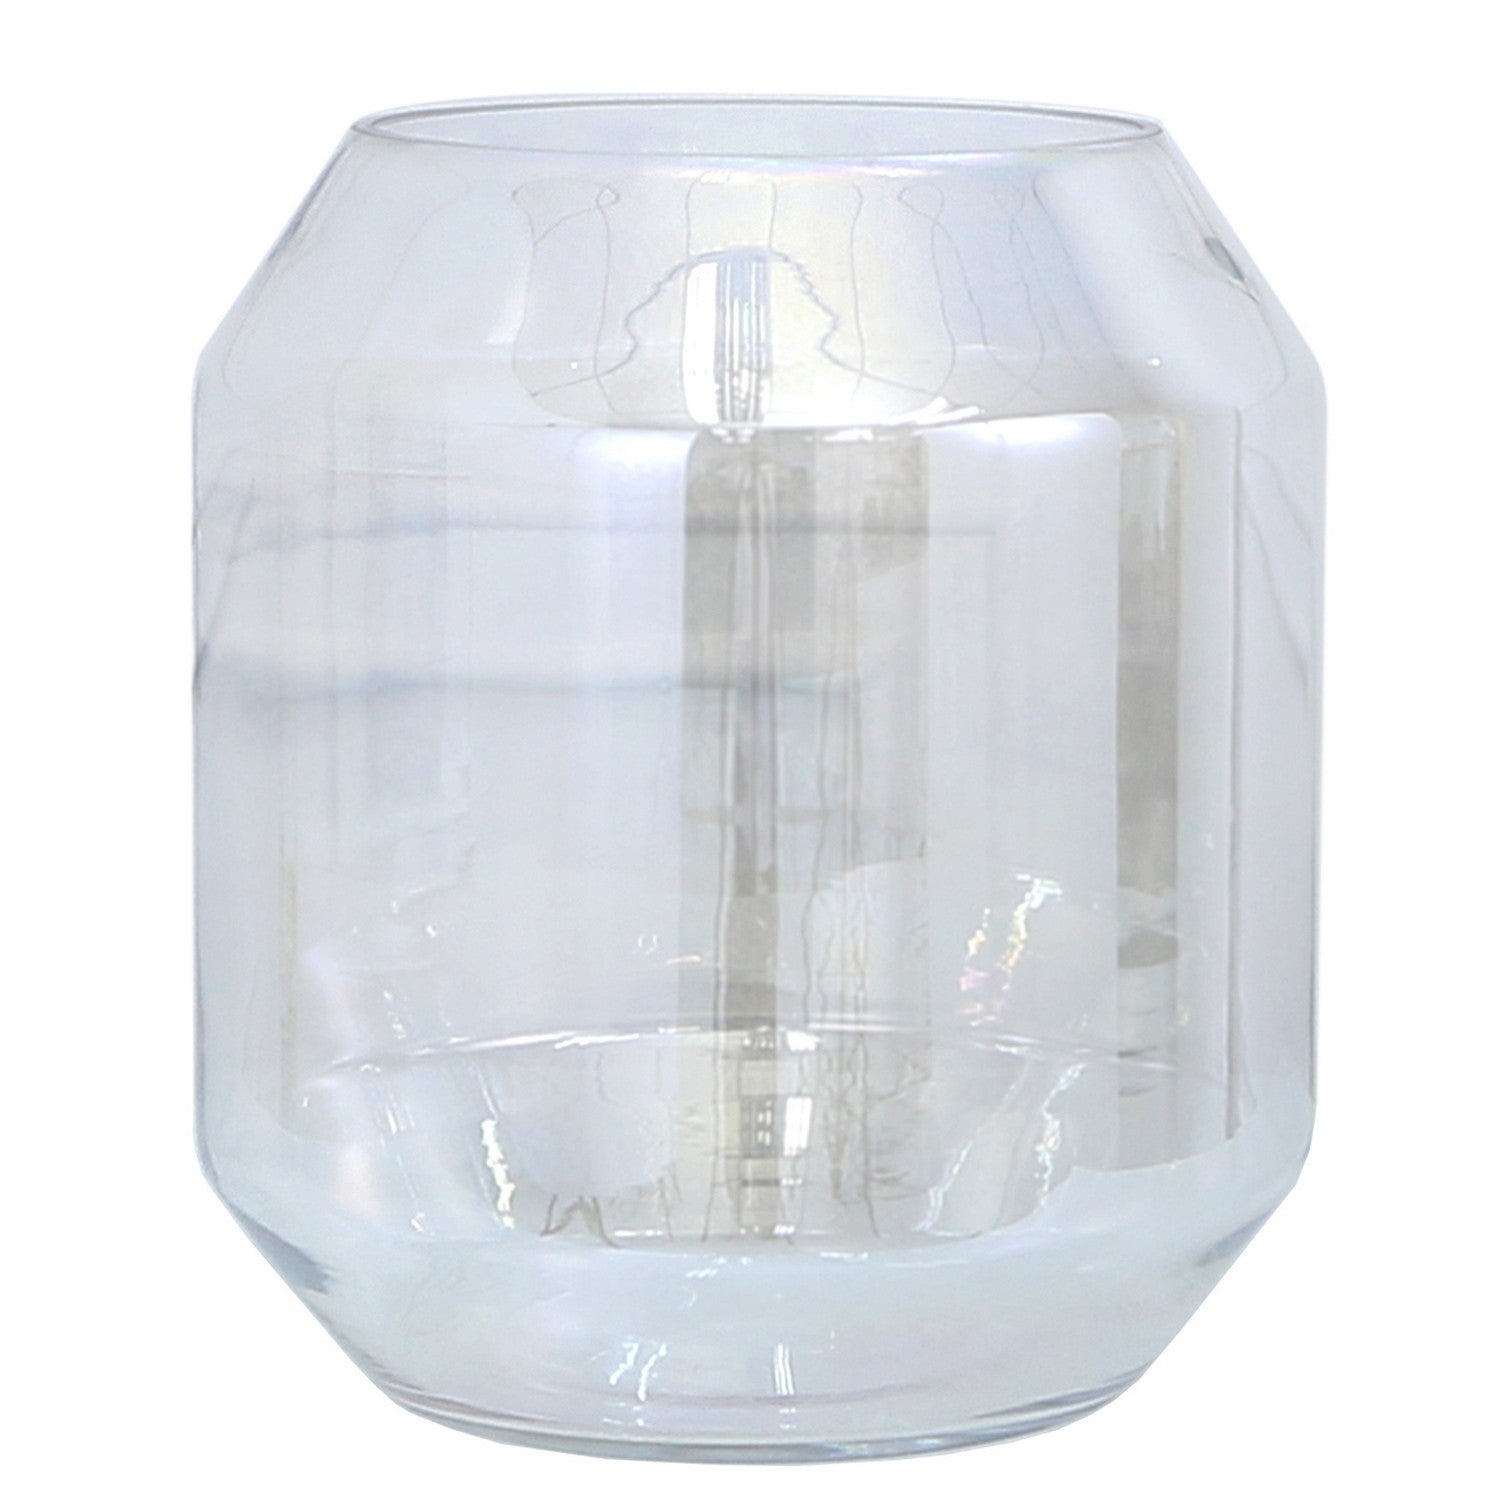 Large 33cm Lustre Glass Ball Vase